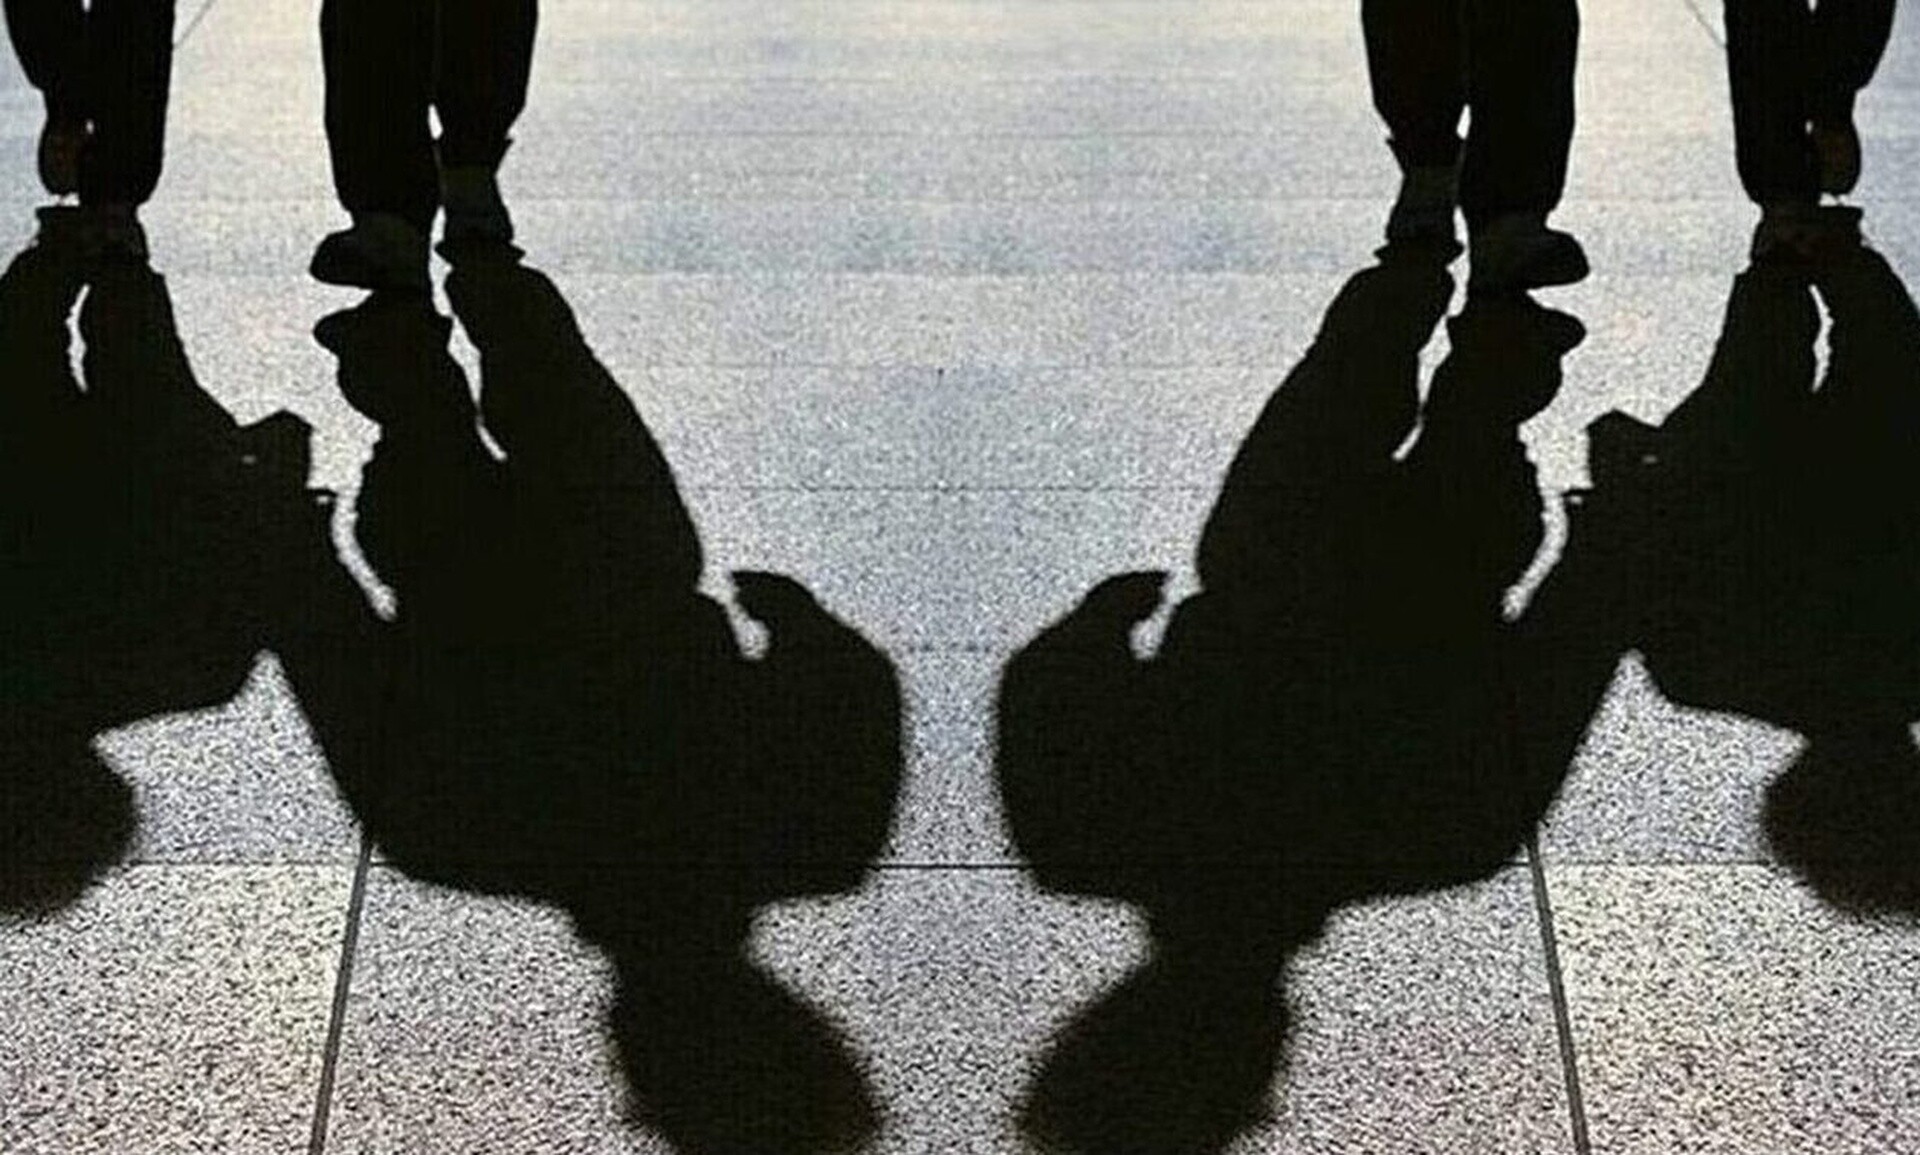 Βόλος: «Είναι σοκαρισμένος και τρομαγμένος», λέει ο πατέρας του 15χρονου που κακοποιήθηκε σεξουαλικά